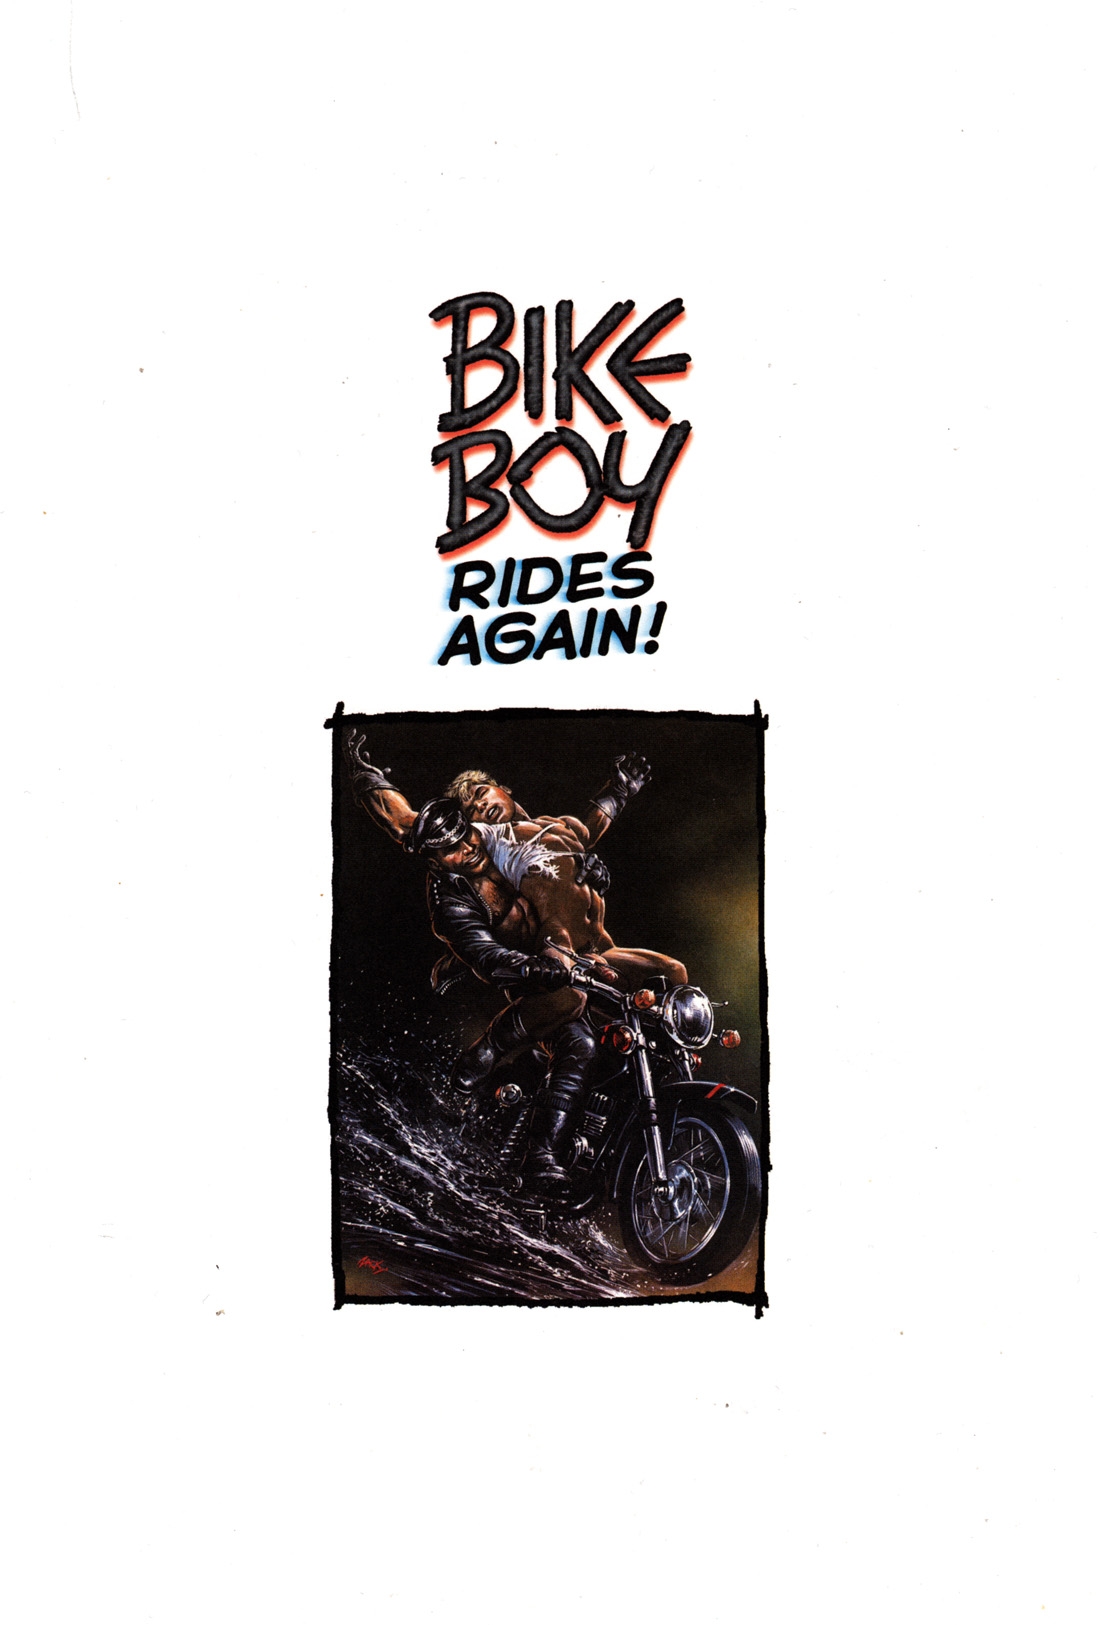 [Oliver Frey] Bike boy rides again 1